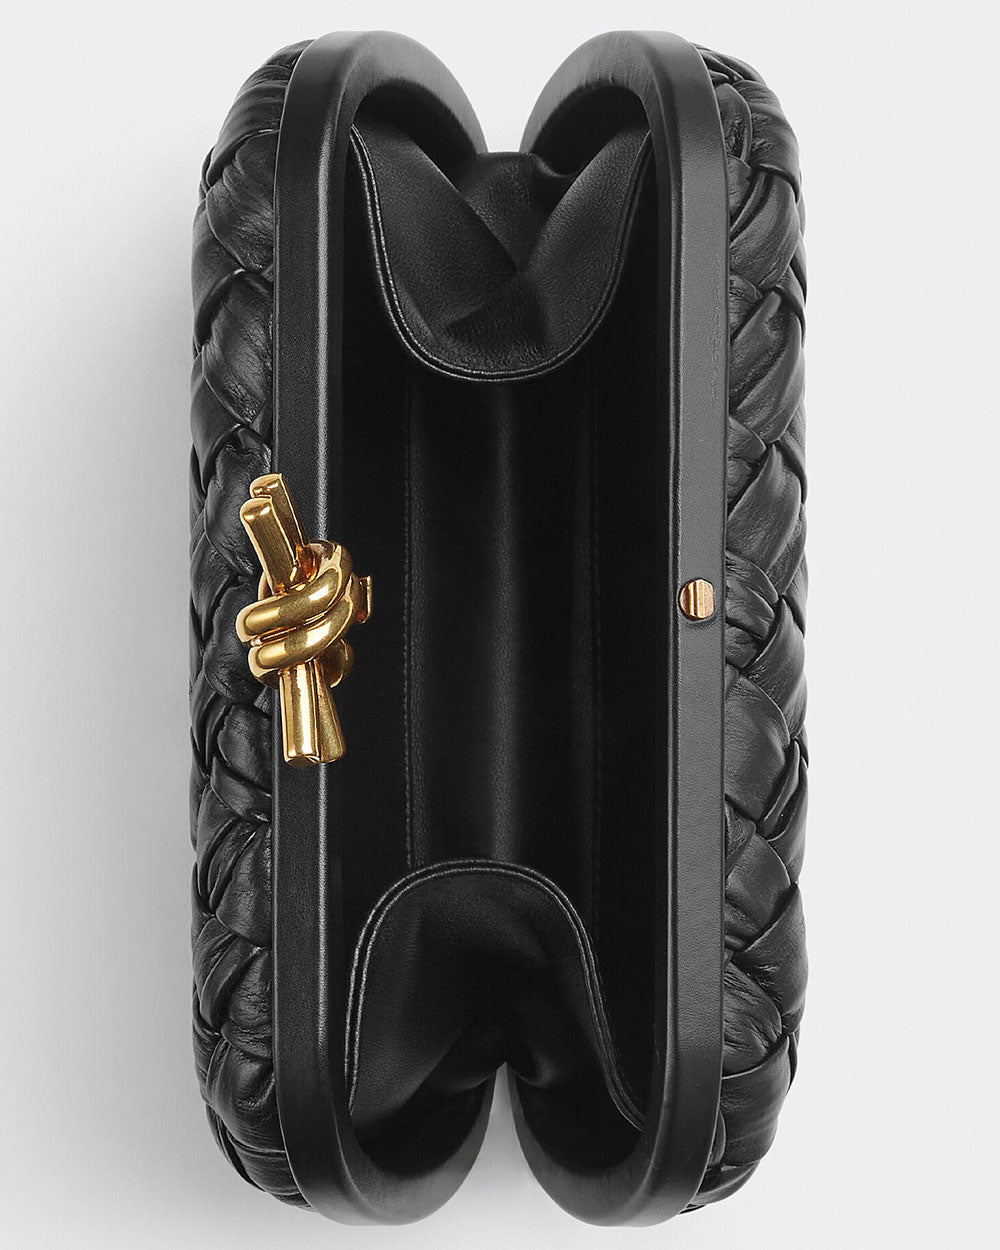 Knot Intreccio Leather Clutch in Black - Bottega Veneta